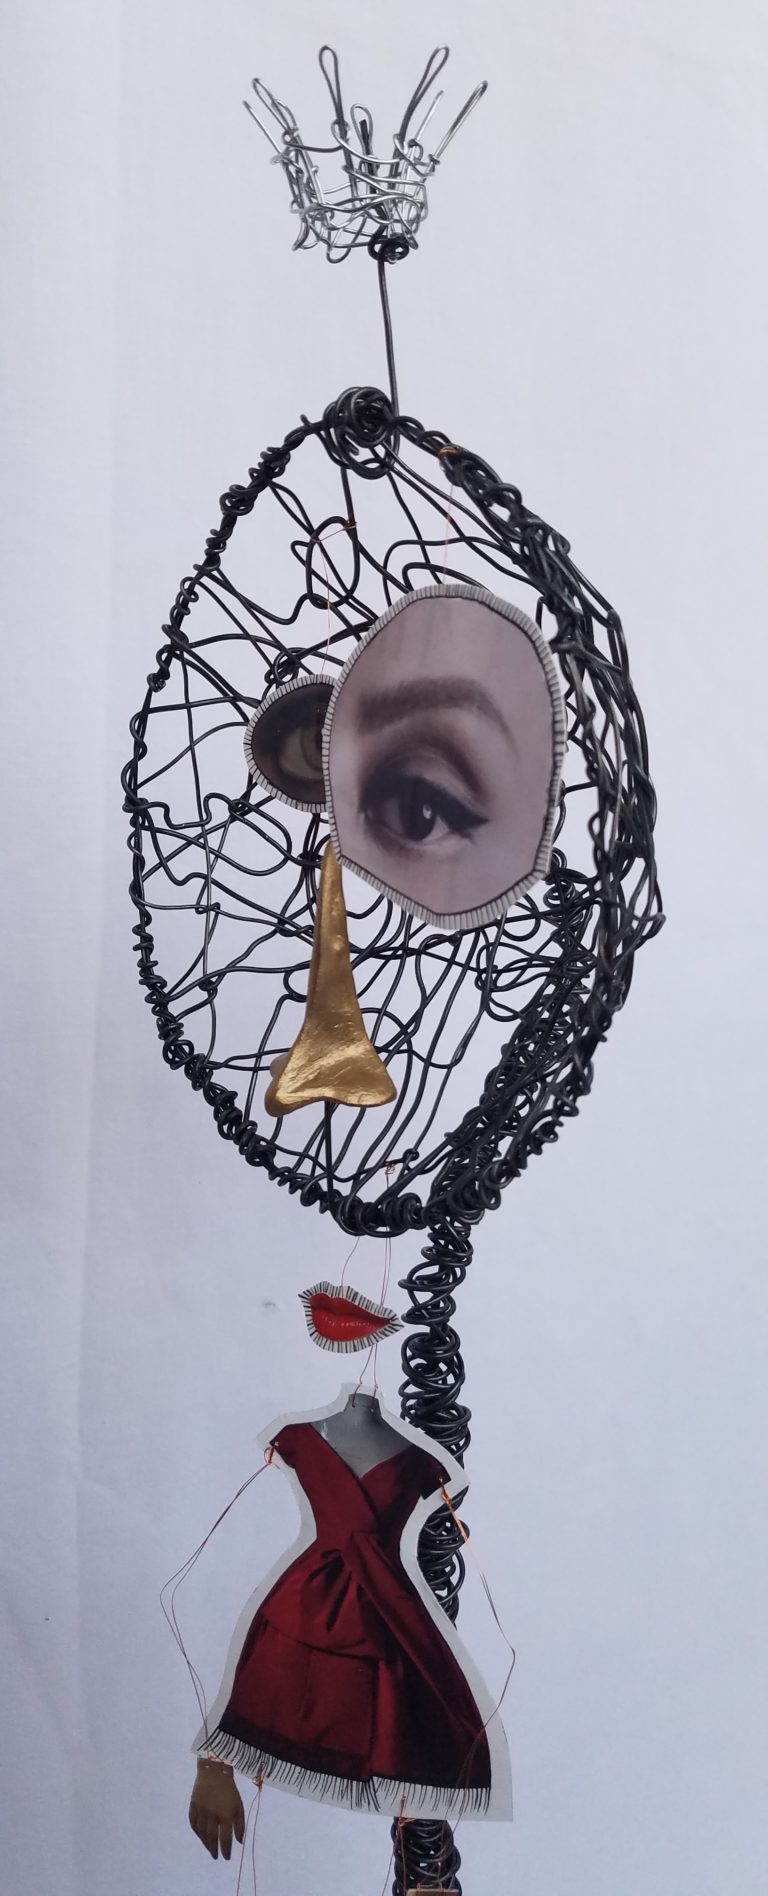 Sculpture de Eveline Ross-Phaneuf. Fait de métal tordu avec morceaux de papier (avec deux yeux, un nez, une bouche, une robe rouge, deux mains, et deux souliers) suspendu devant.